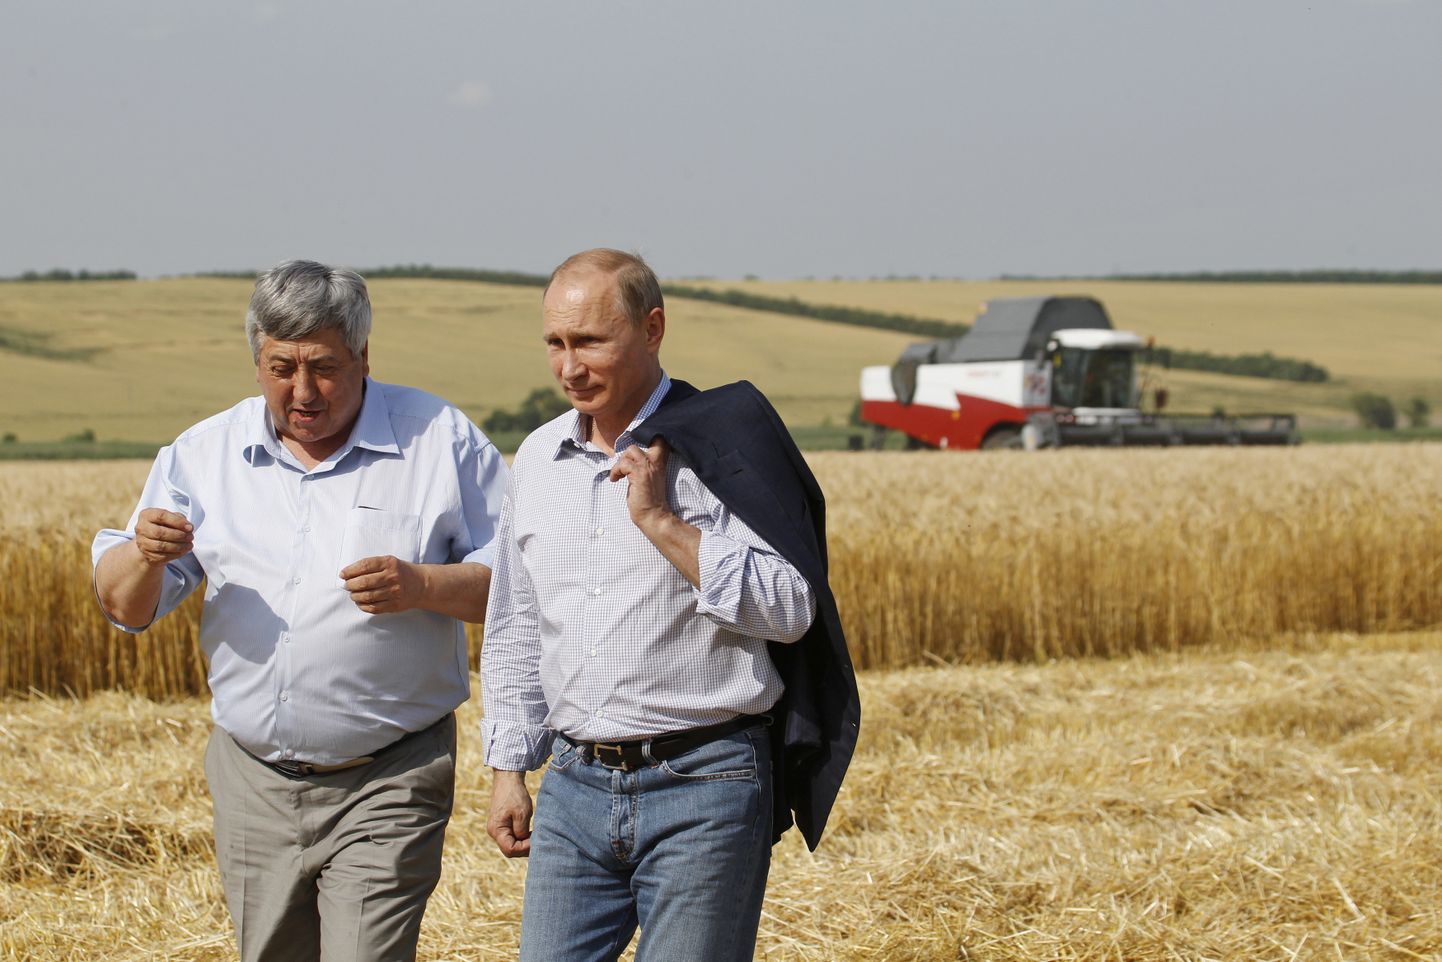 Venemaa president Vladimir Putin põllumaad külastamas.